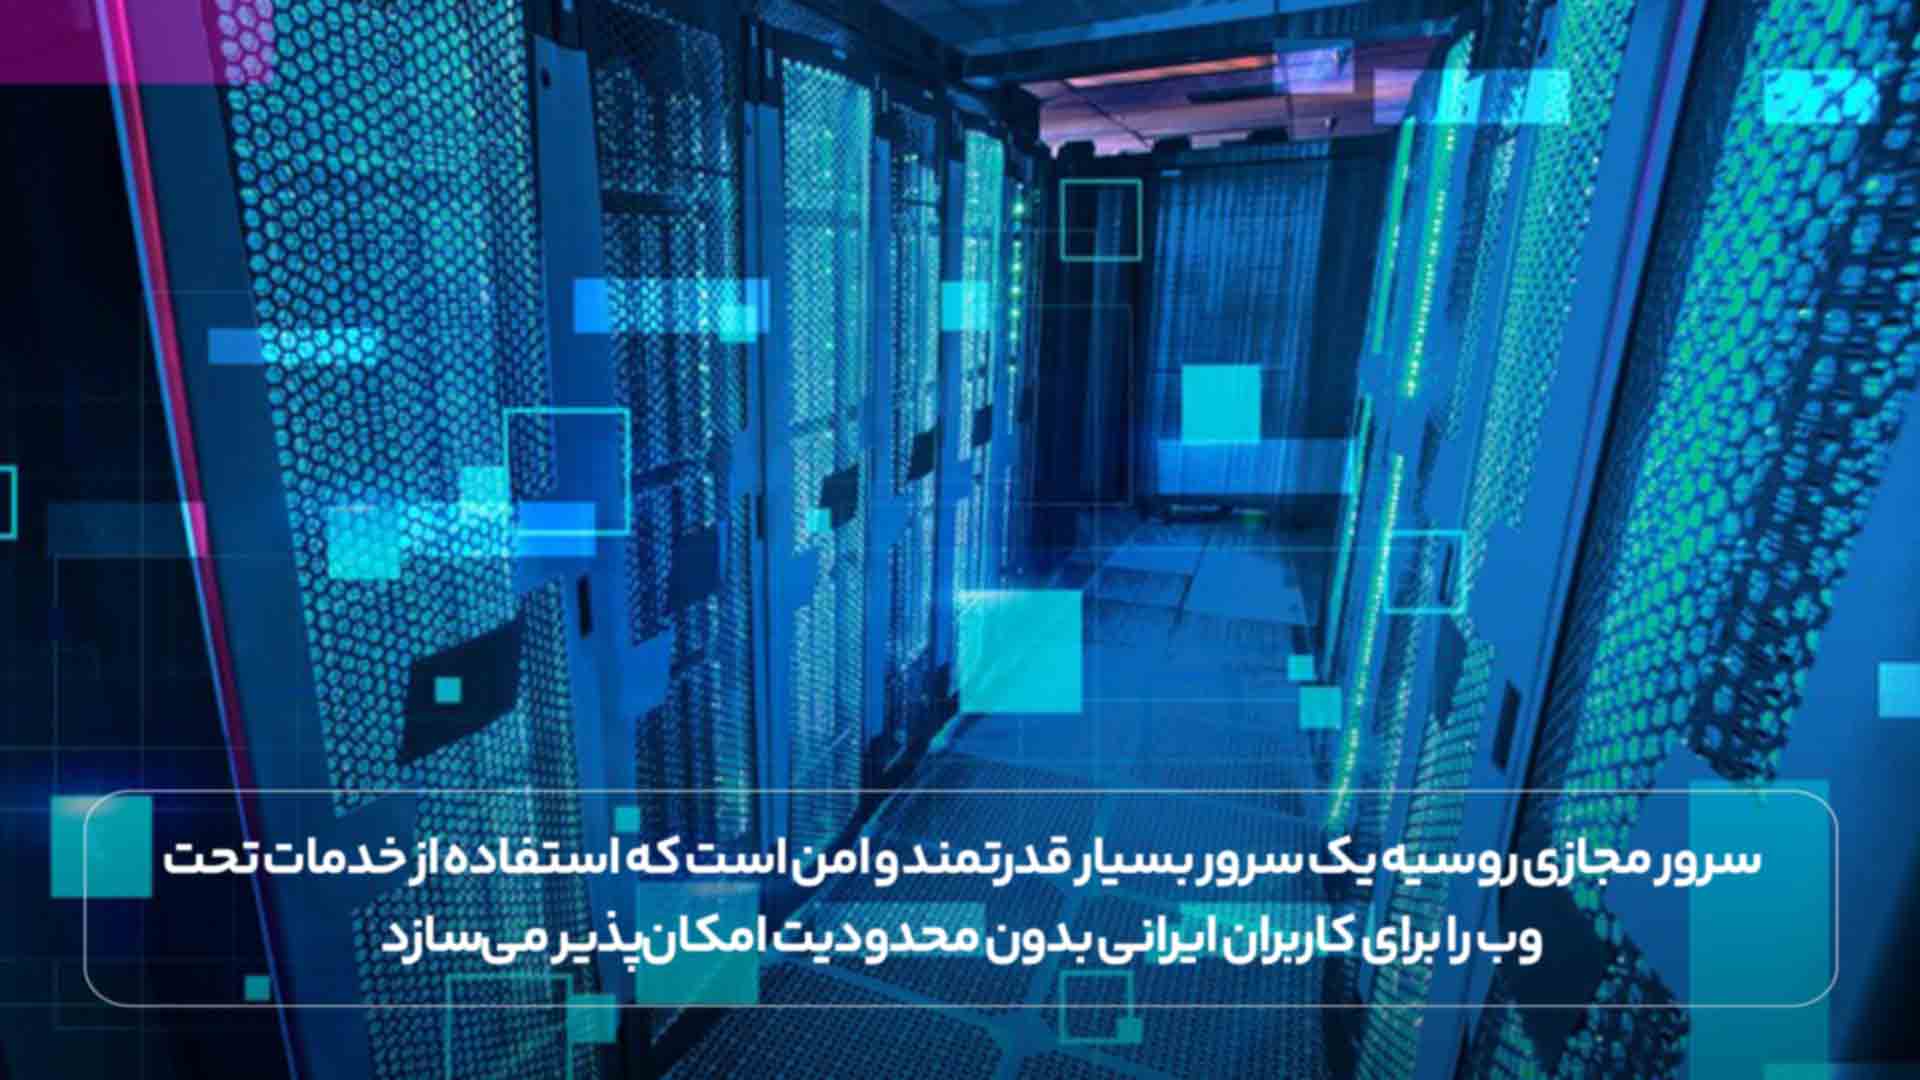 سرور مجازی روسیه یک قدرتمندبرای کاربران ایرانی 